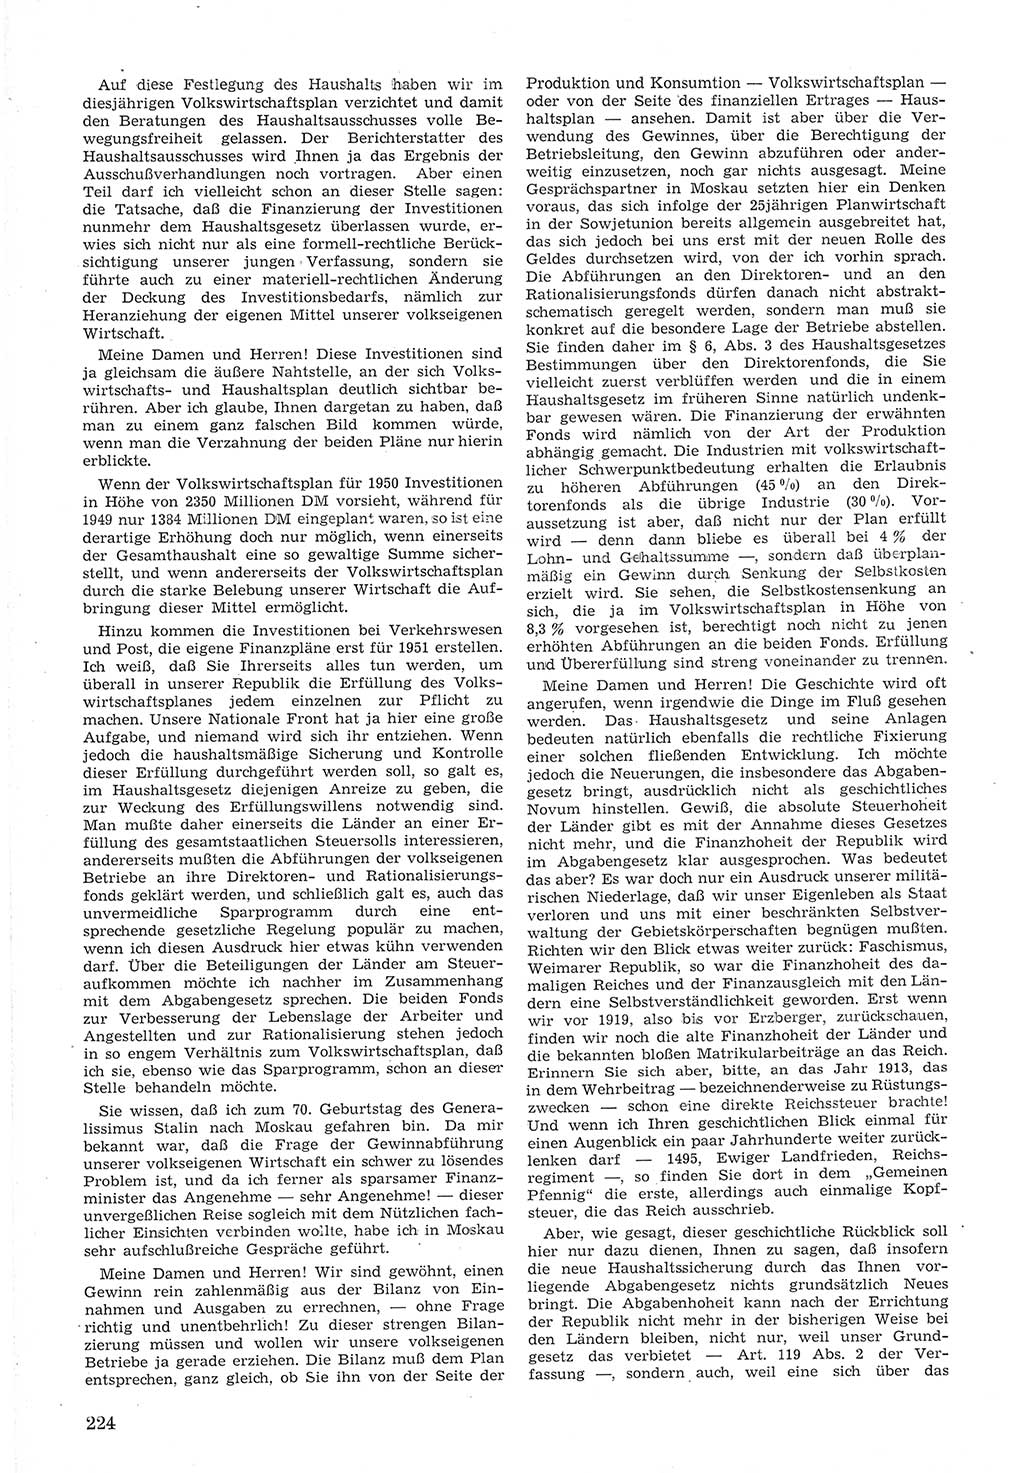 Provisorische Volkskammer (VK) der Deutschen Demokratischen Republik (DDR) 1949-1950, Dokument 238 (Prov. VK DDR 1949-1950, Dok. 238)